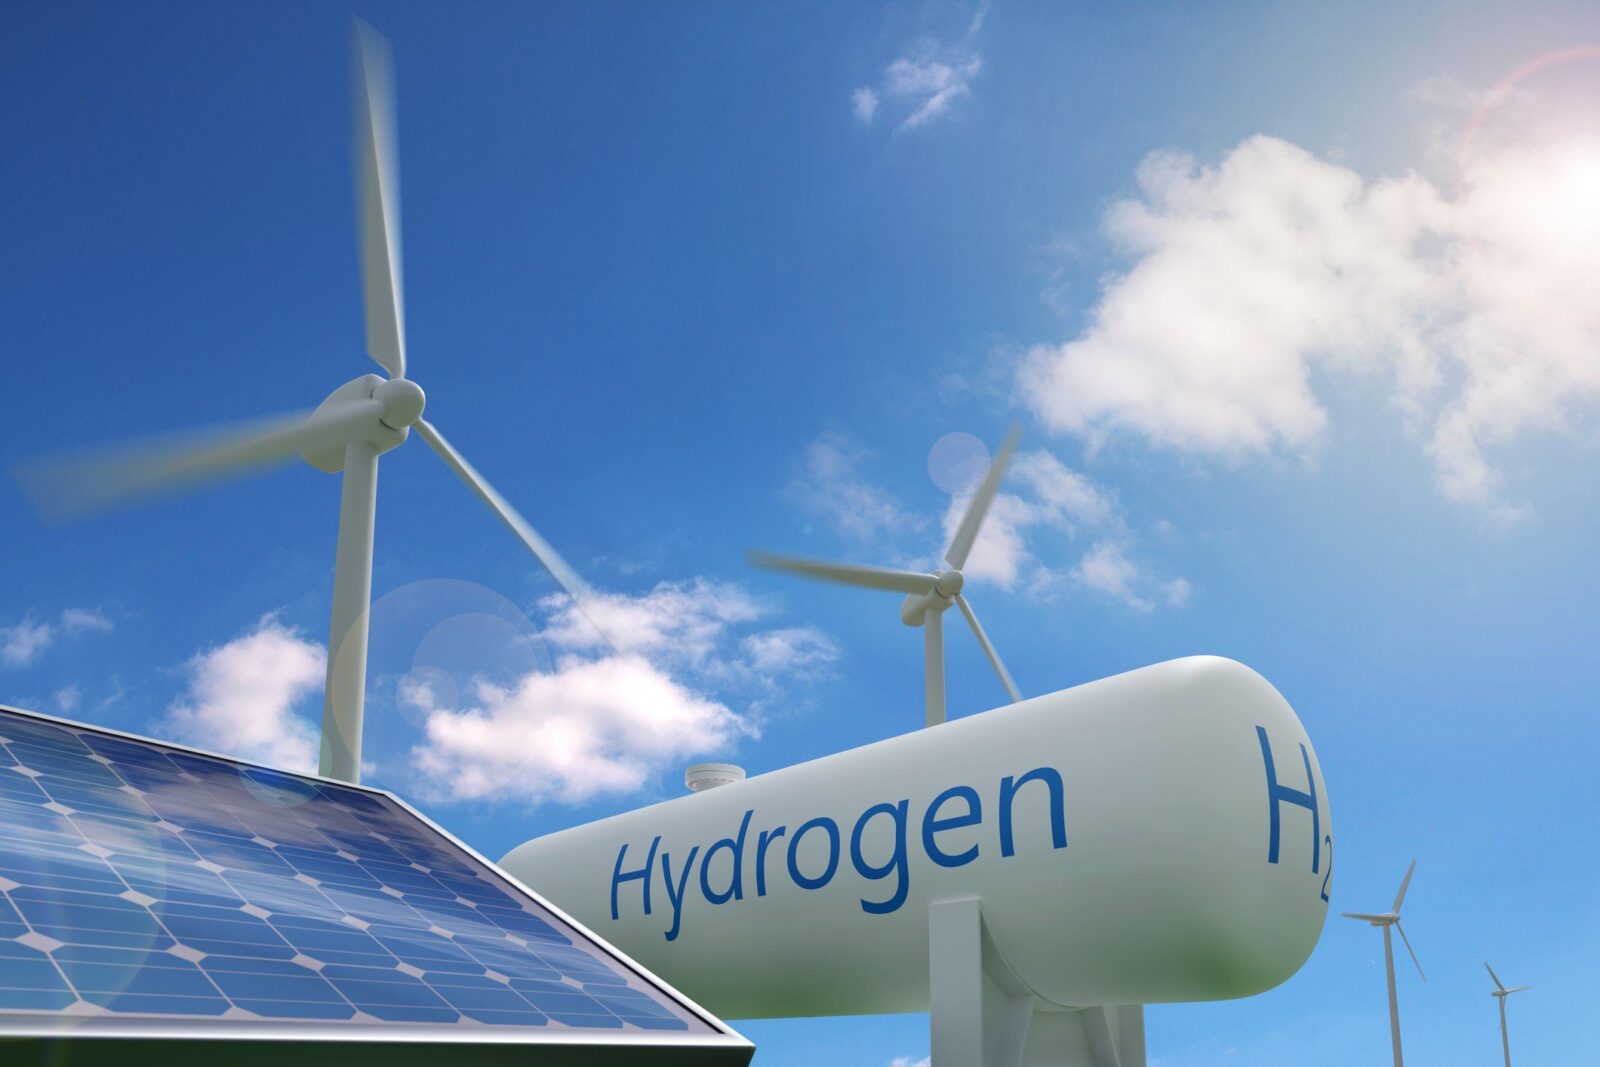 Sustinerea politicilor UE pentru hidrogenul regenerabil se intensifica in Europa in contextul intensificarii competitiei globale